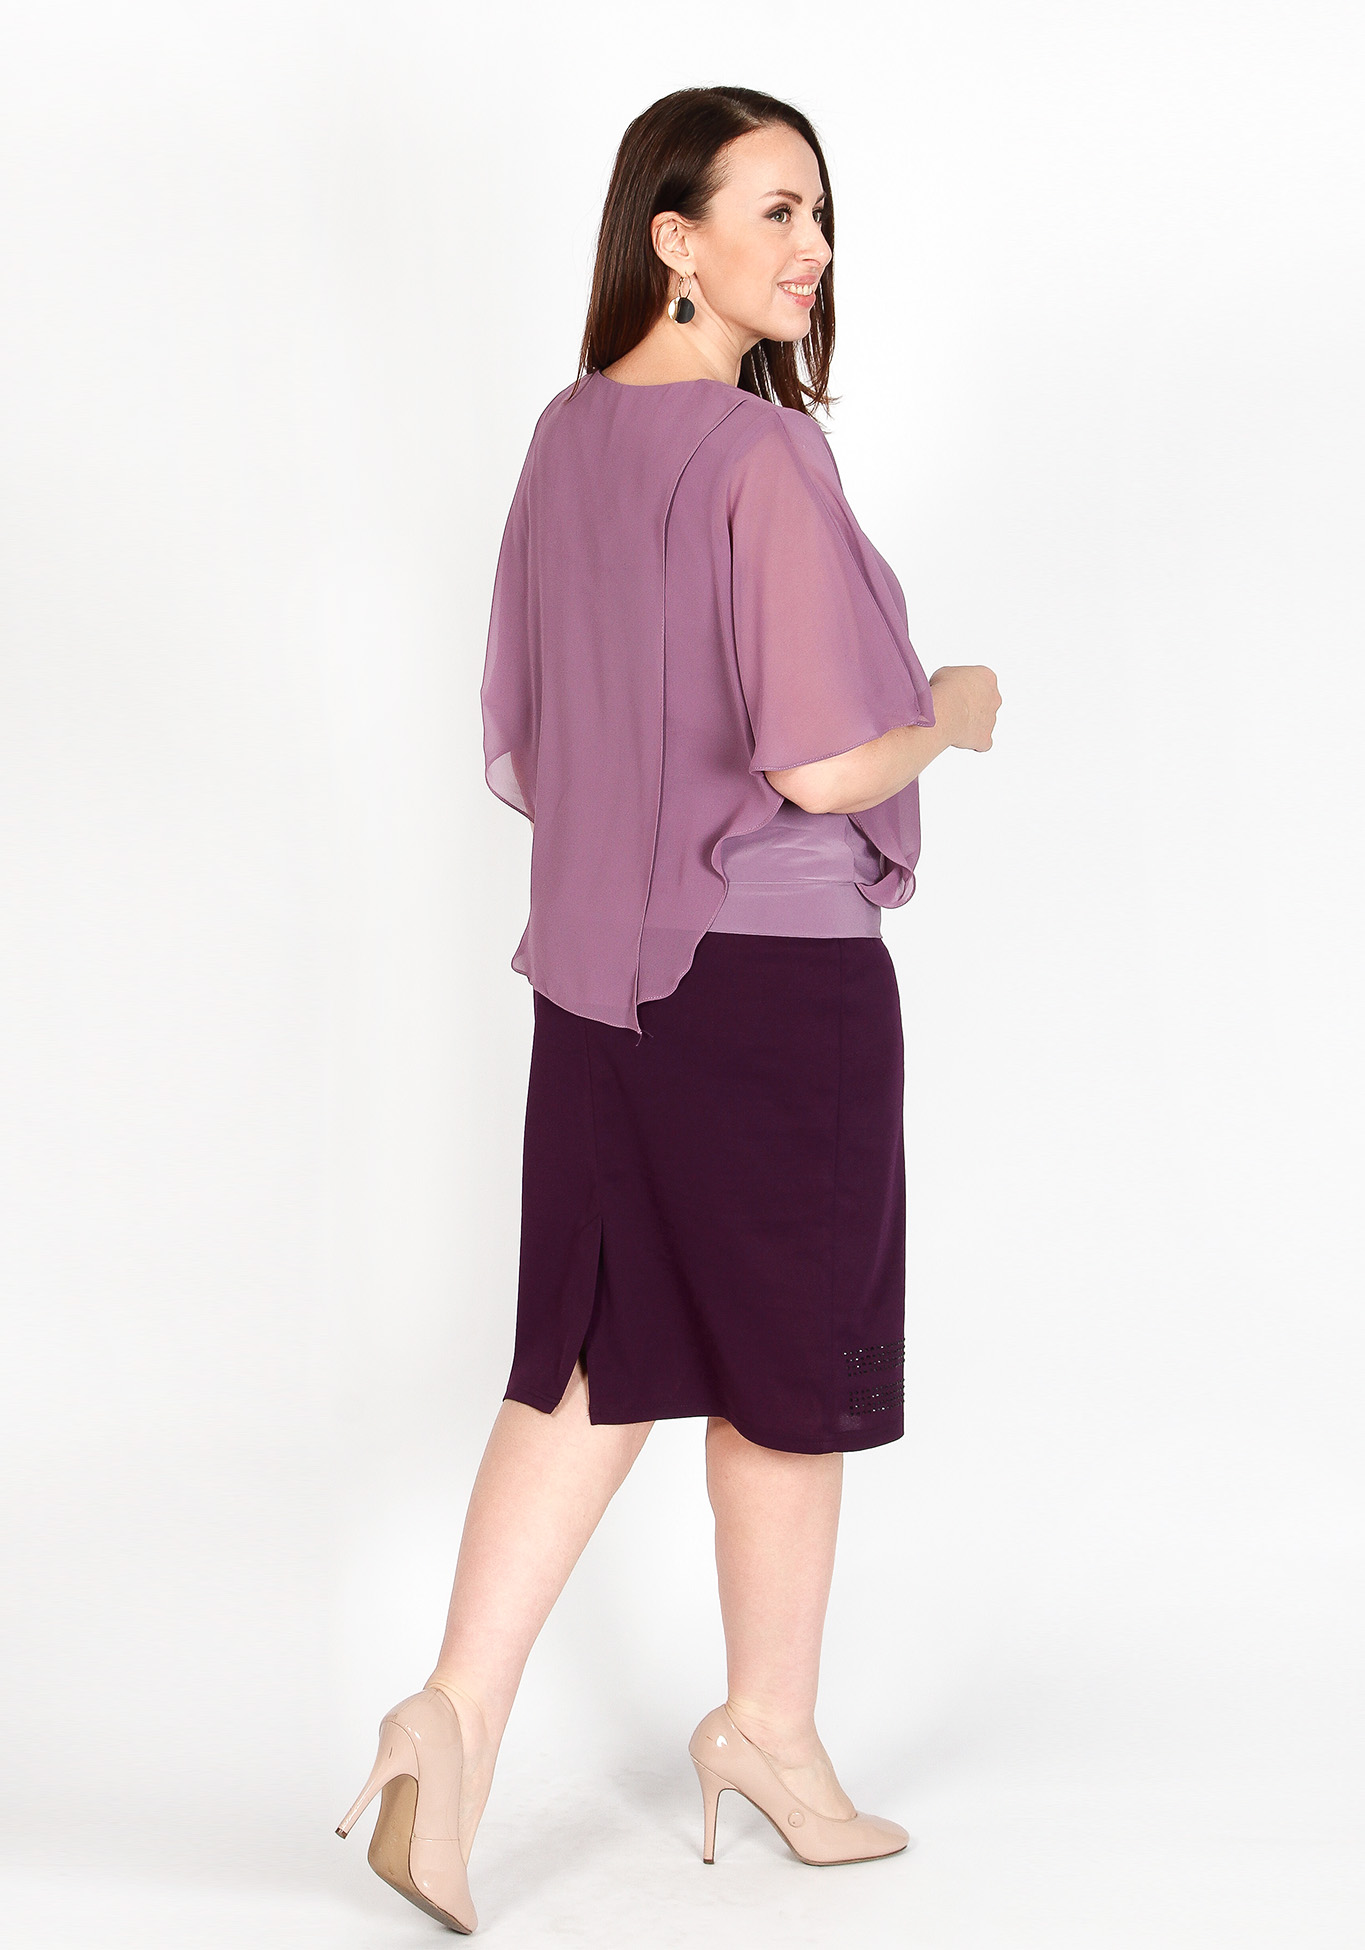 Блуза «Романтичный образ» Zanzara, размер 50, цвет пудровый - фото 1